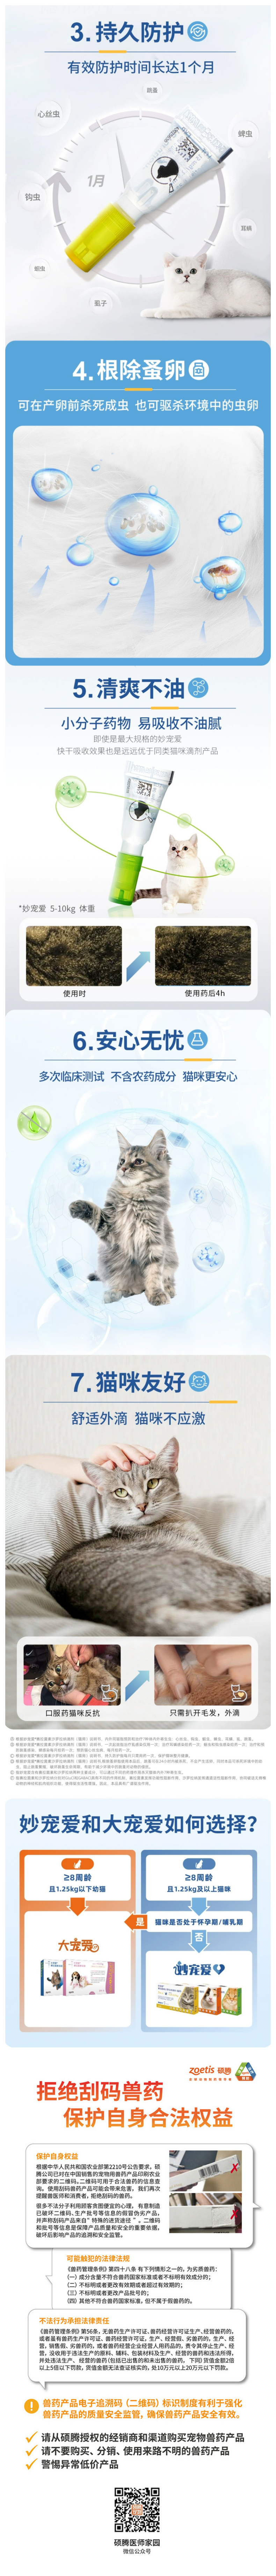 硕腾 妙宠爱1.25-2.5kg猫咪驱虫药3.png